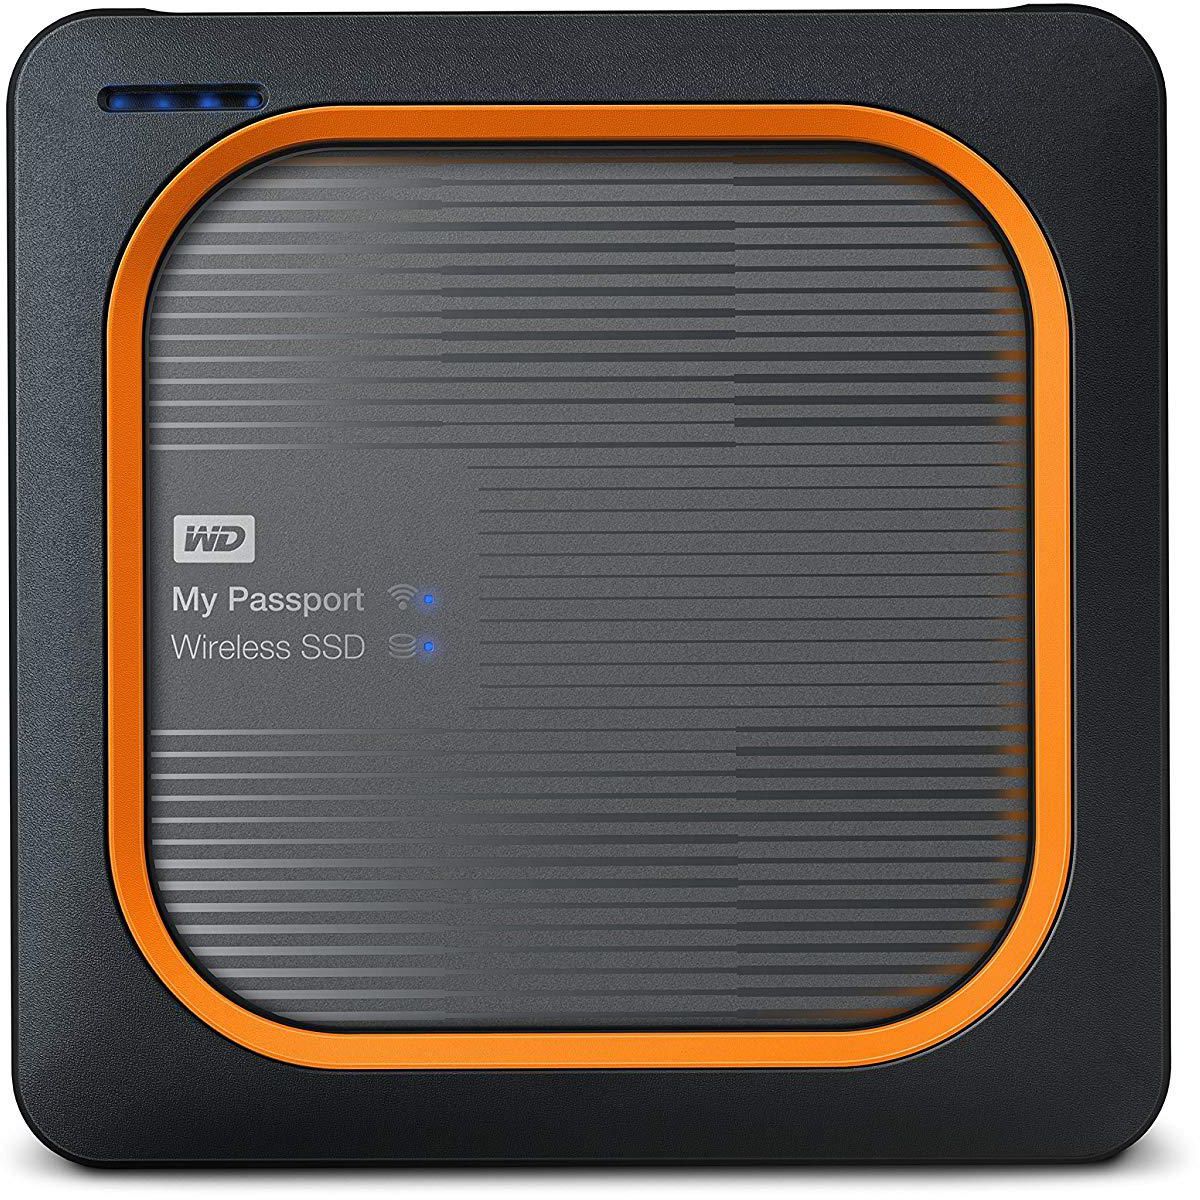 WD 250GB My Passport Wireless SSD External Portable Drive – WiFi USB 3.0 – WDBAMJ2500AGY-NESN